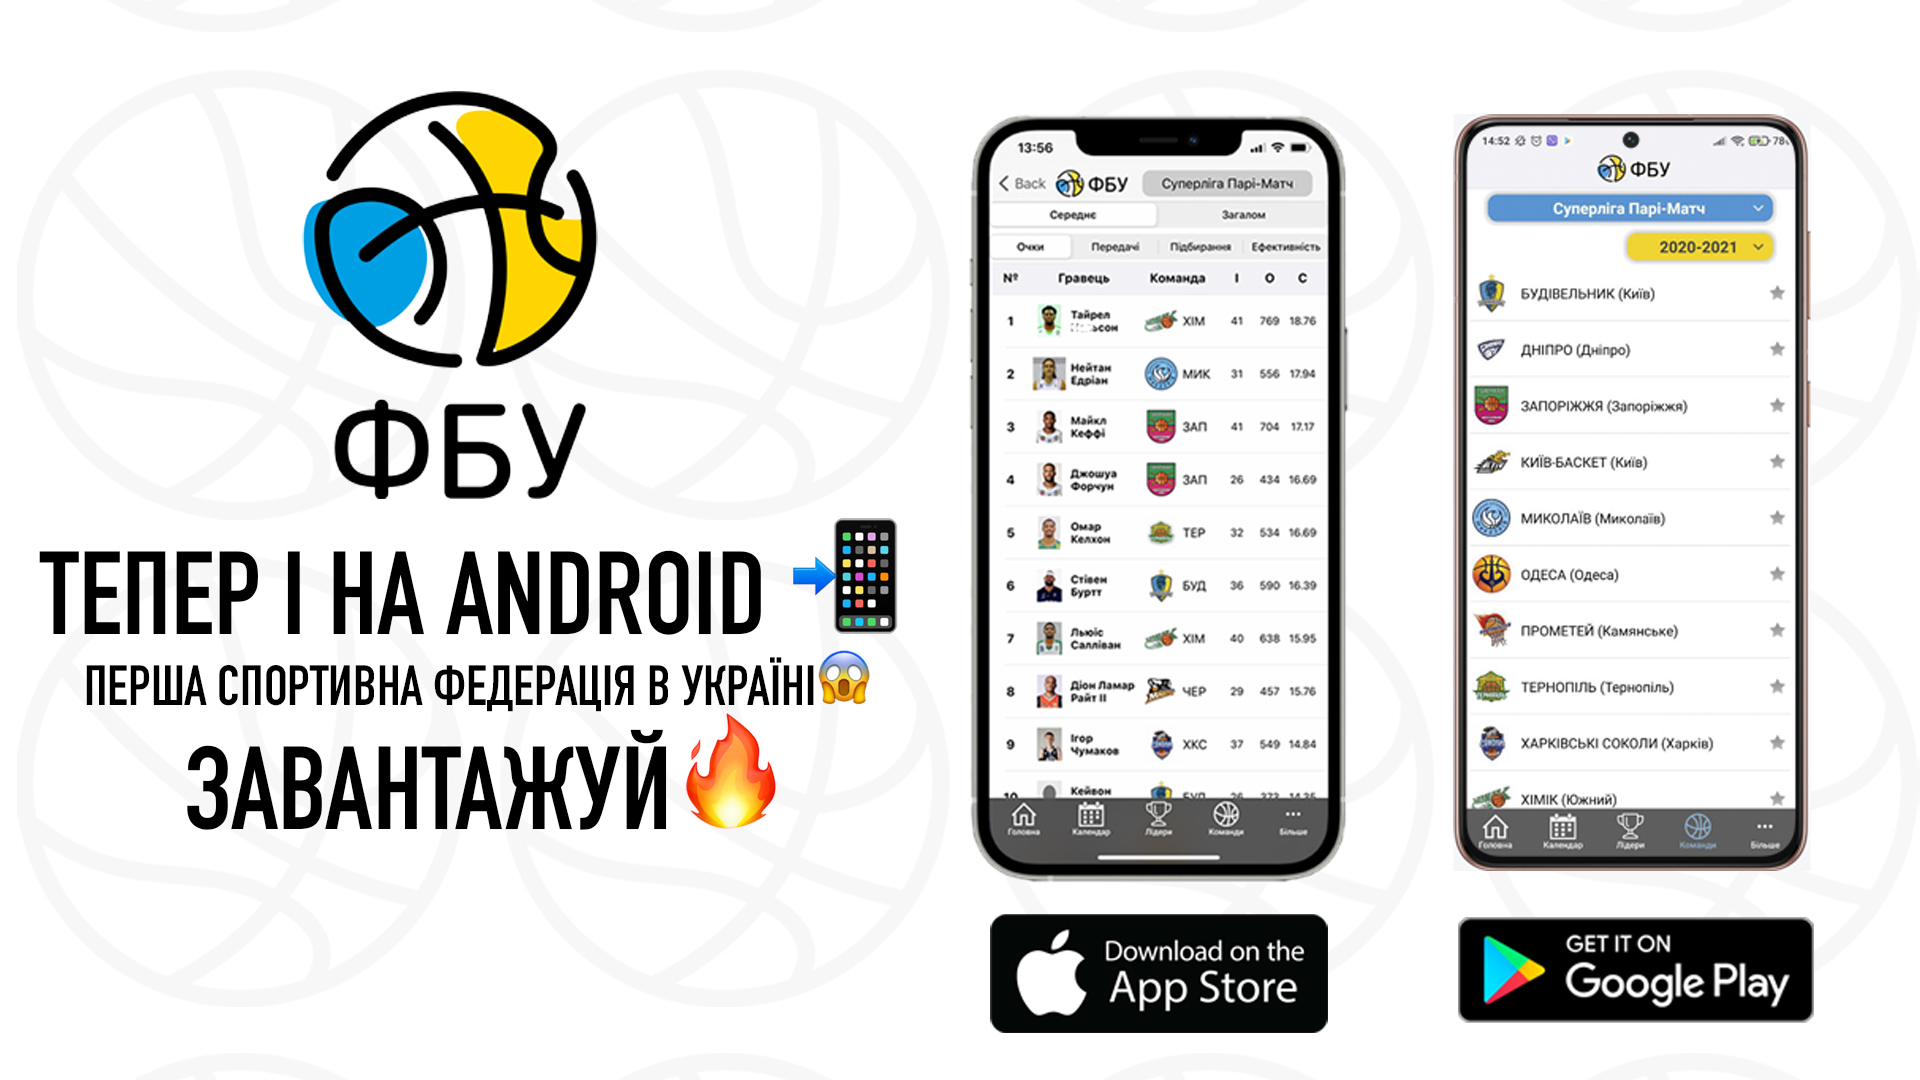 ФБУ запустила мобільний додаток для Android